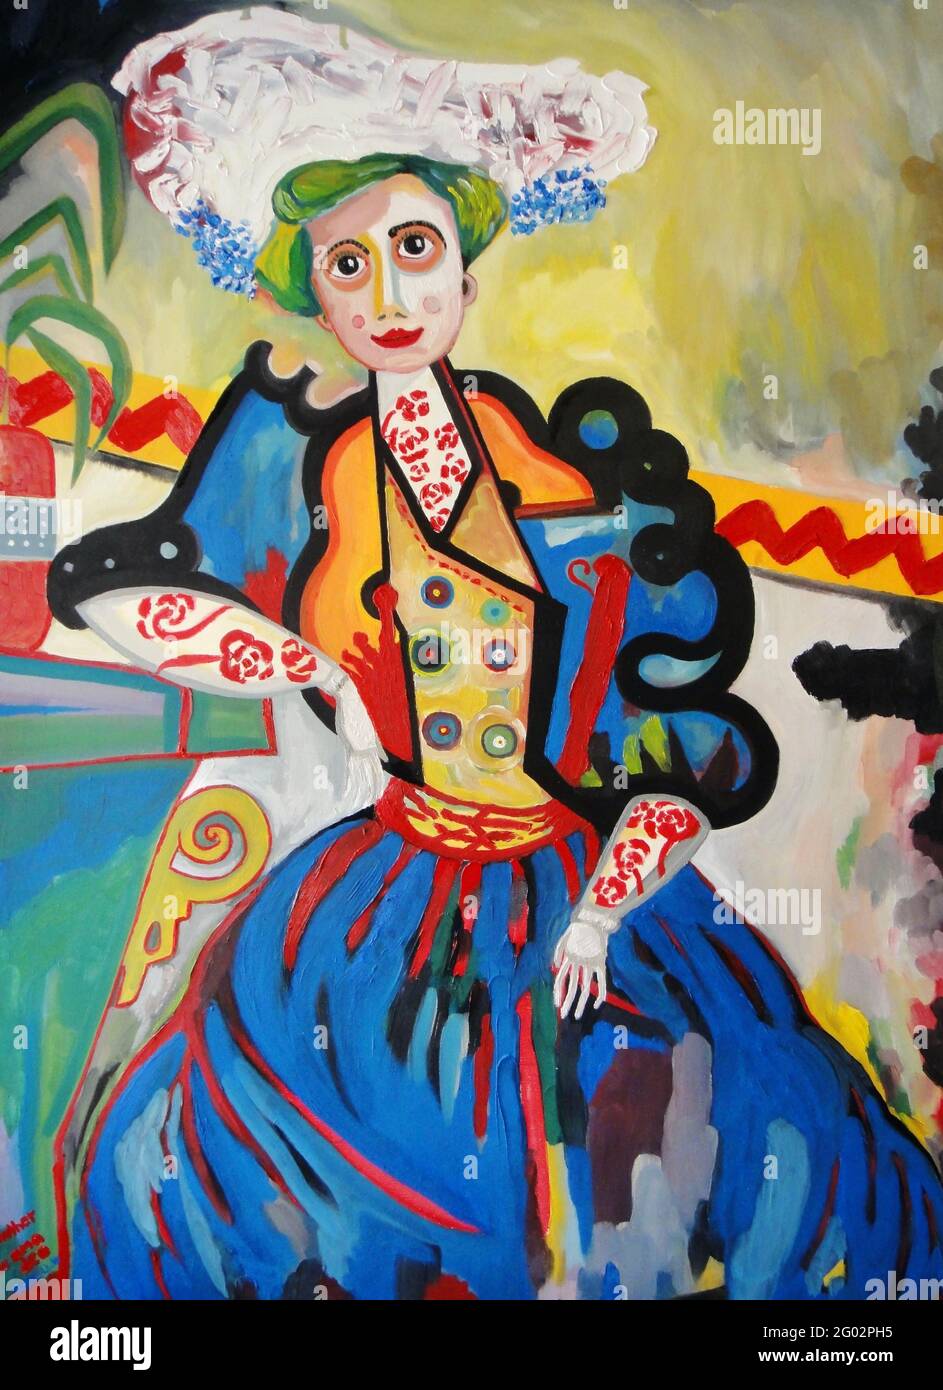 Amadeo de Souza-Cardoso - La Mujer - MUHLER - Mujer muy colorida que parece divertido estar con. Foto de stock